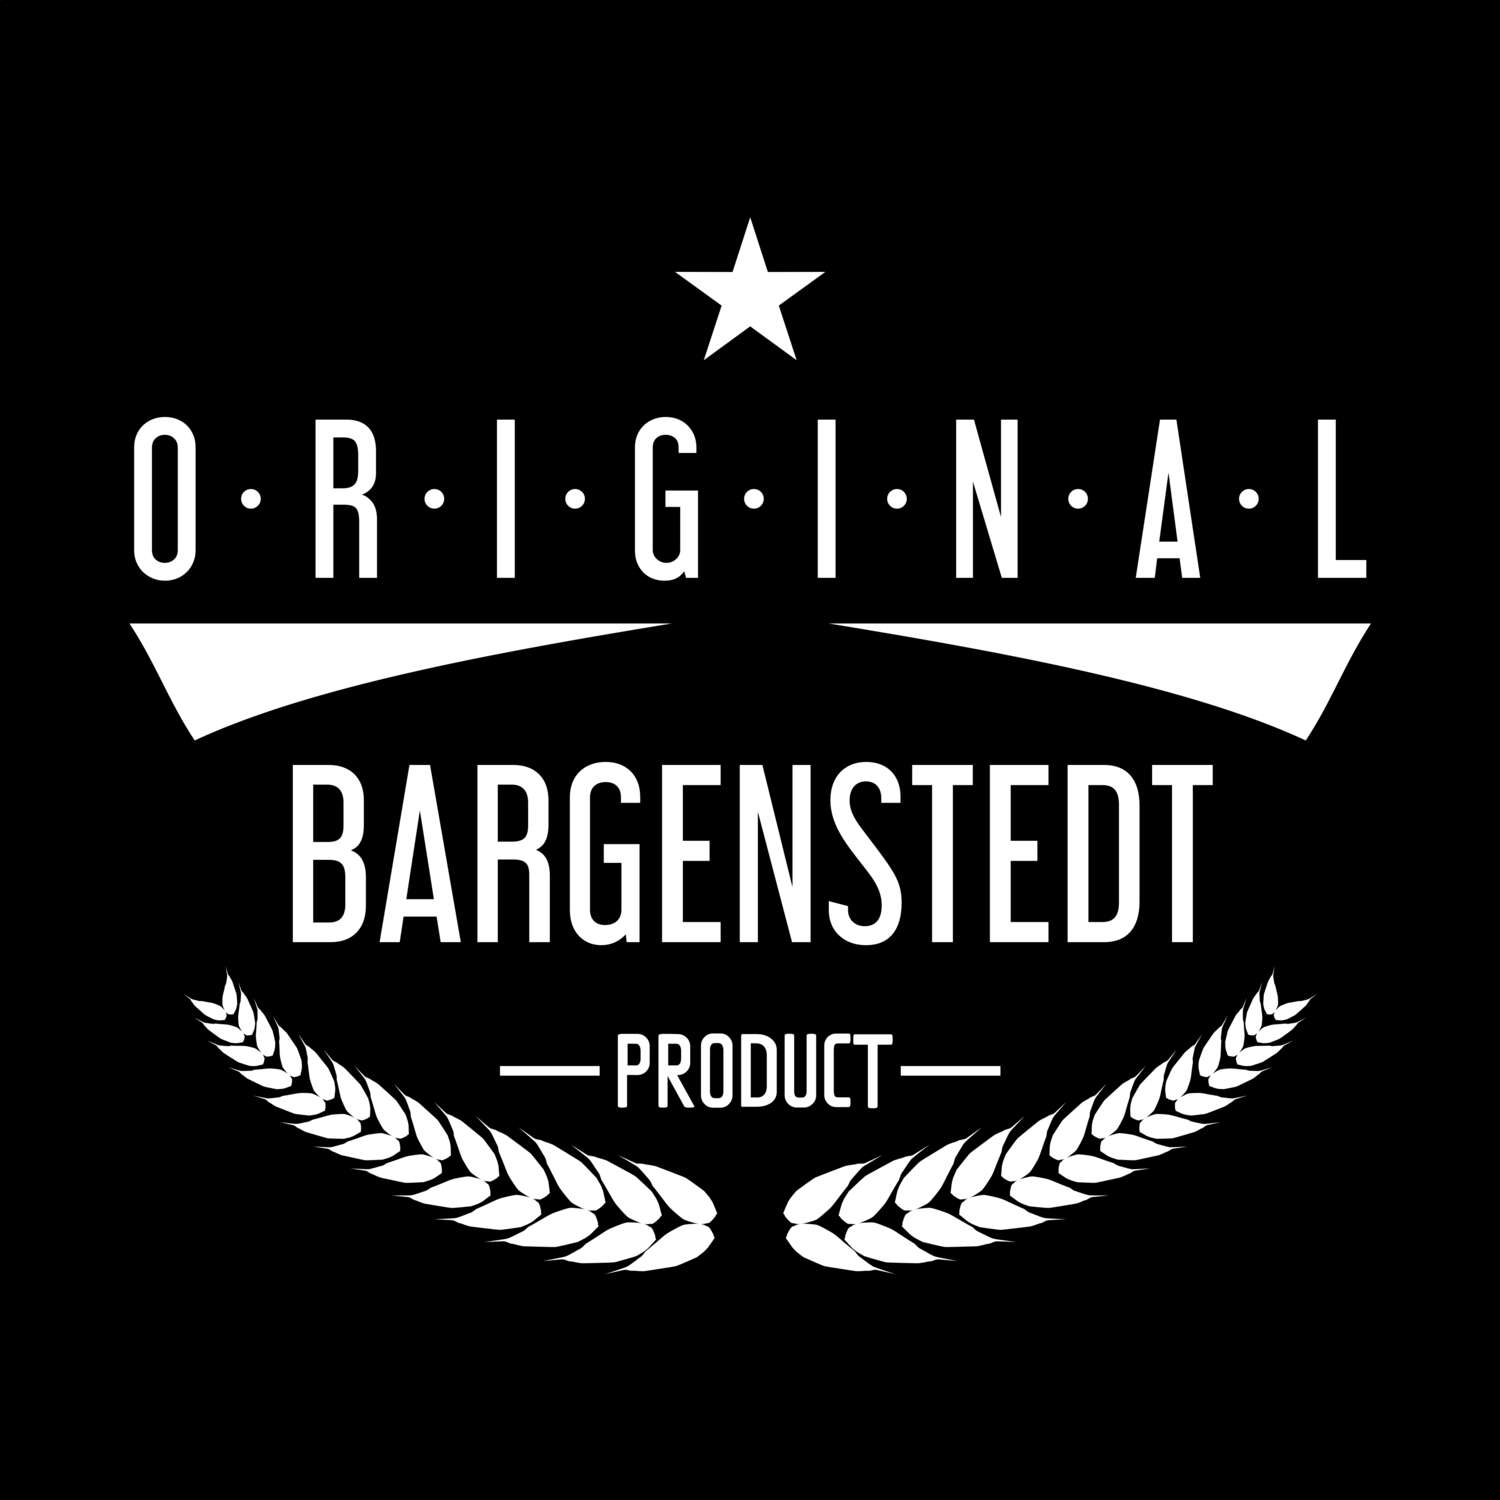 Bargenstedt T-Shirt »Original Product«